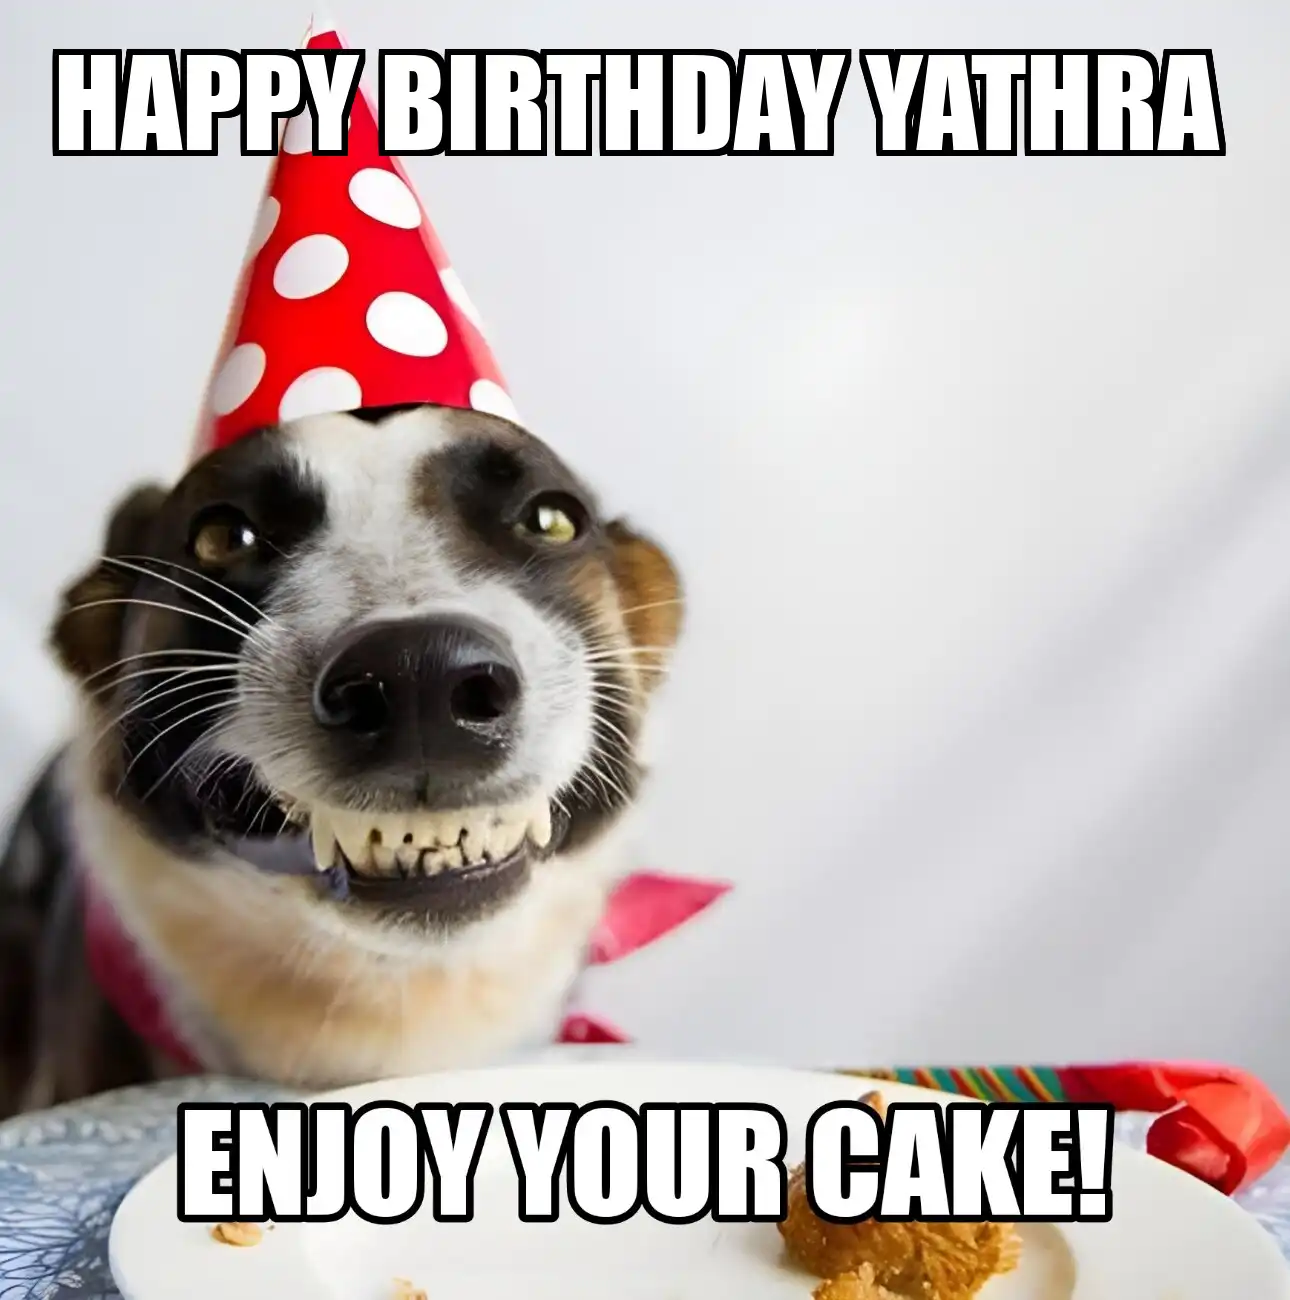 Happy Birthday Yathra Enjoy Your Cake Dog Meme